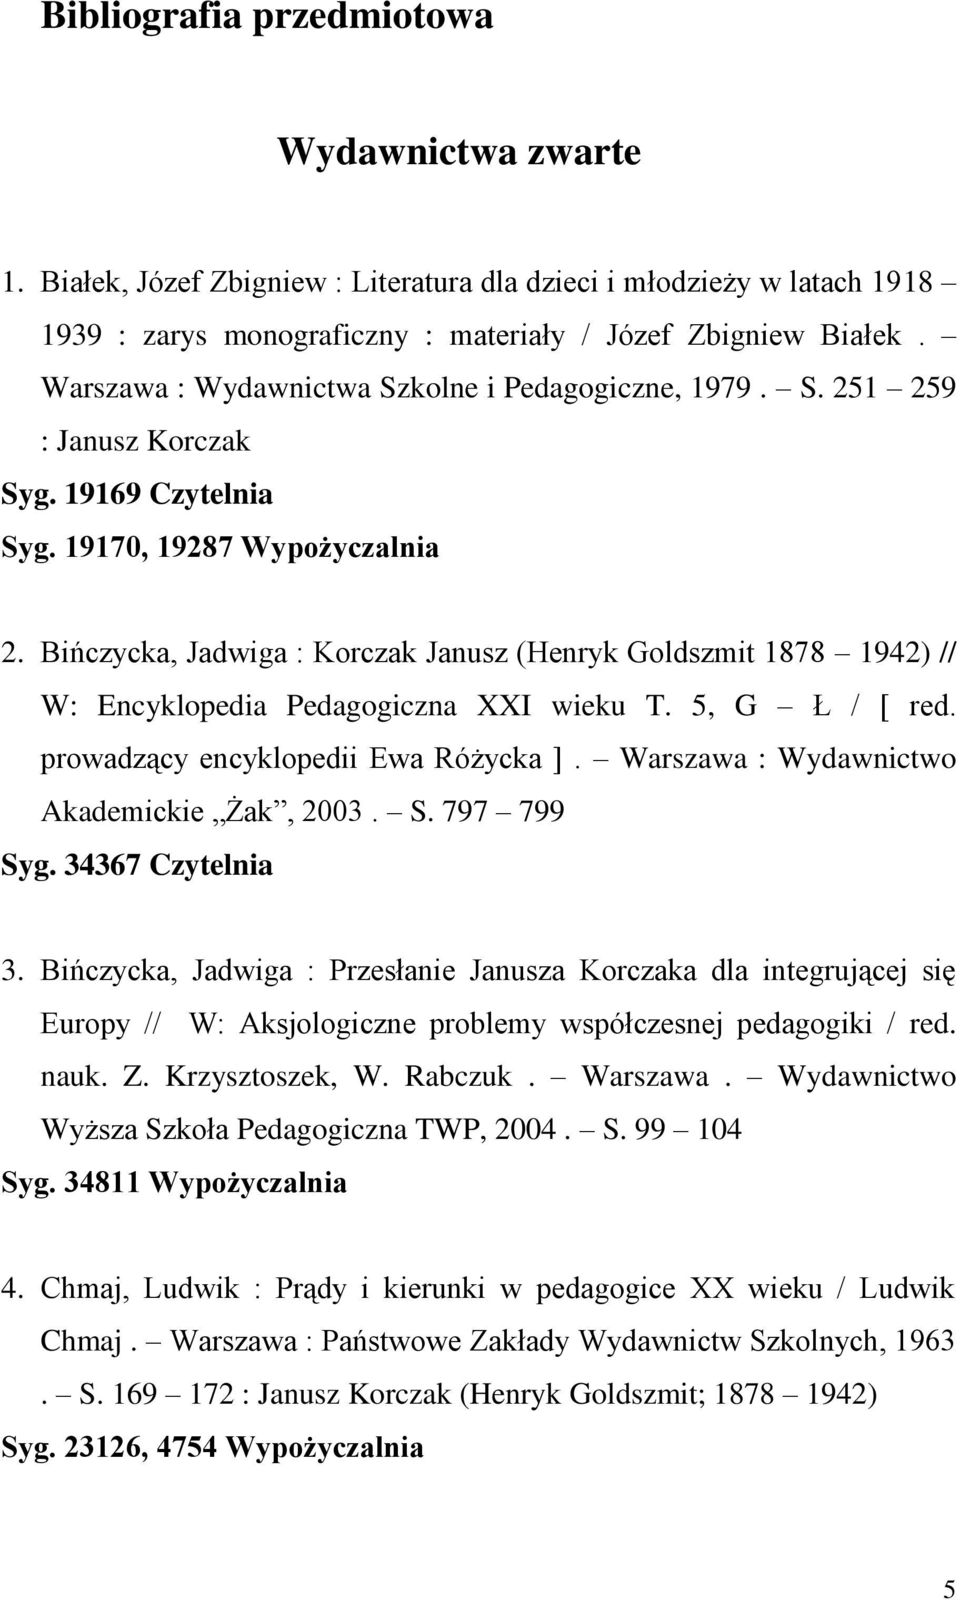 Bińczycka, Jadwiga : Korczak Janusz (Henryk Goldszmit 1878 1942) // W: Encyklopedia Pedagogiczna XXI wieku T. 5, G Ł / [ red. prowadzący encyklopedii Ewa Różycka ].